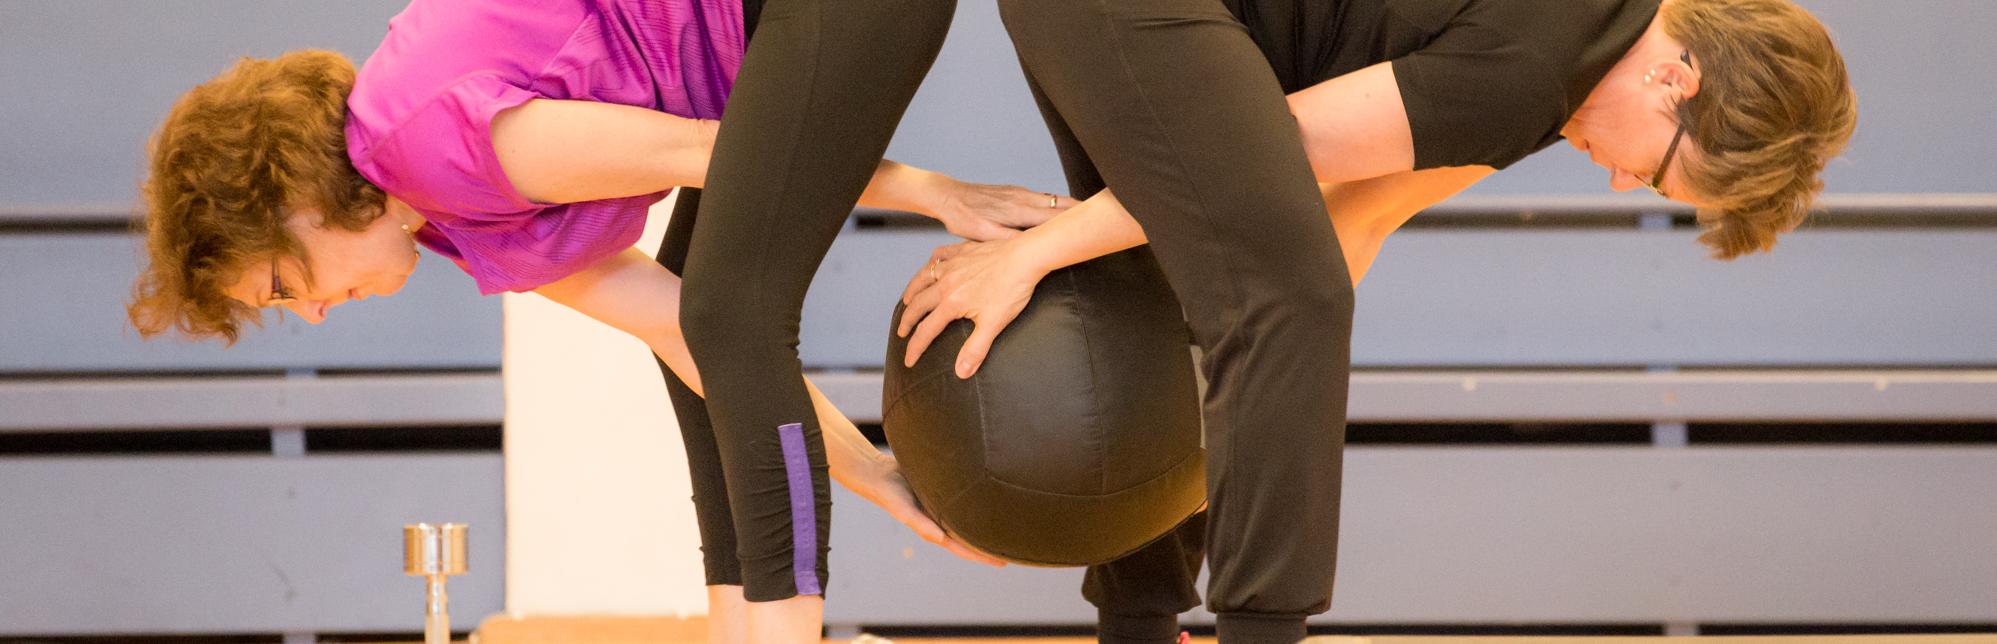 Två kvinnor tränar med en boll